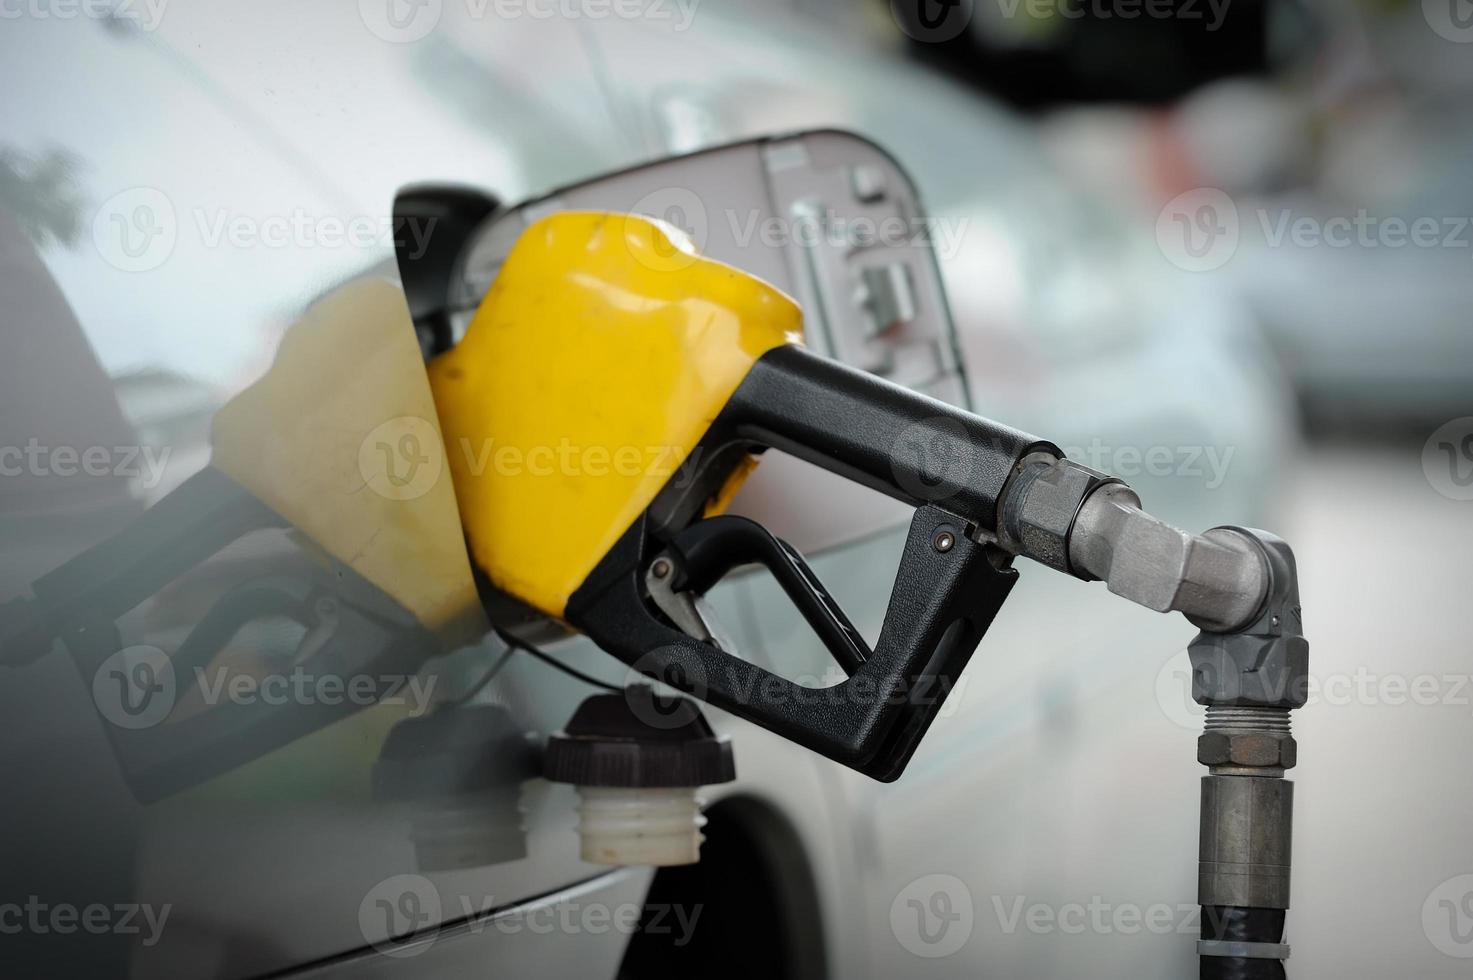 bensinpumpens fyllning foto